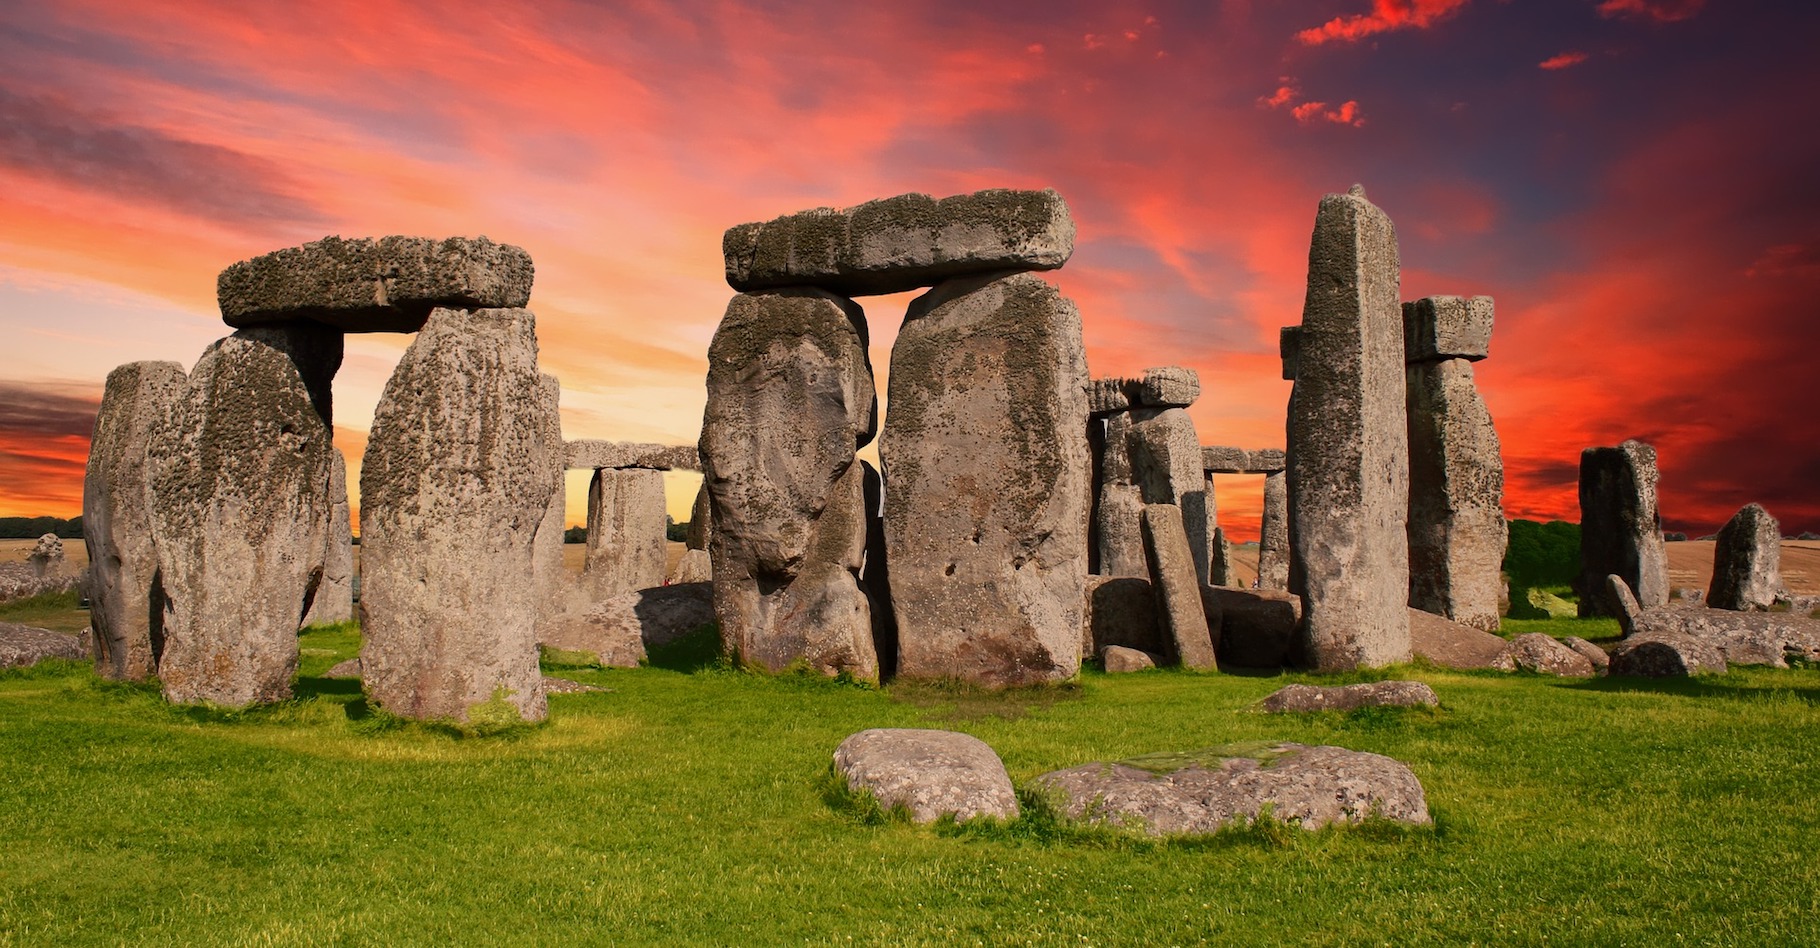 On trouve des dolmens et des menhirs un peu partout dans le monde, mais le site mégalithique le plus connu est sans doute celui de Stonehenge. © HypnoArt, Pixabay, CC0 Public Domain